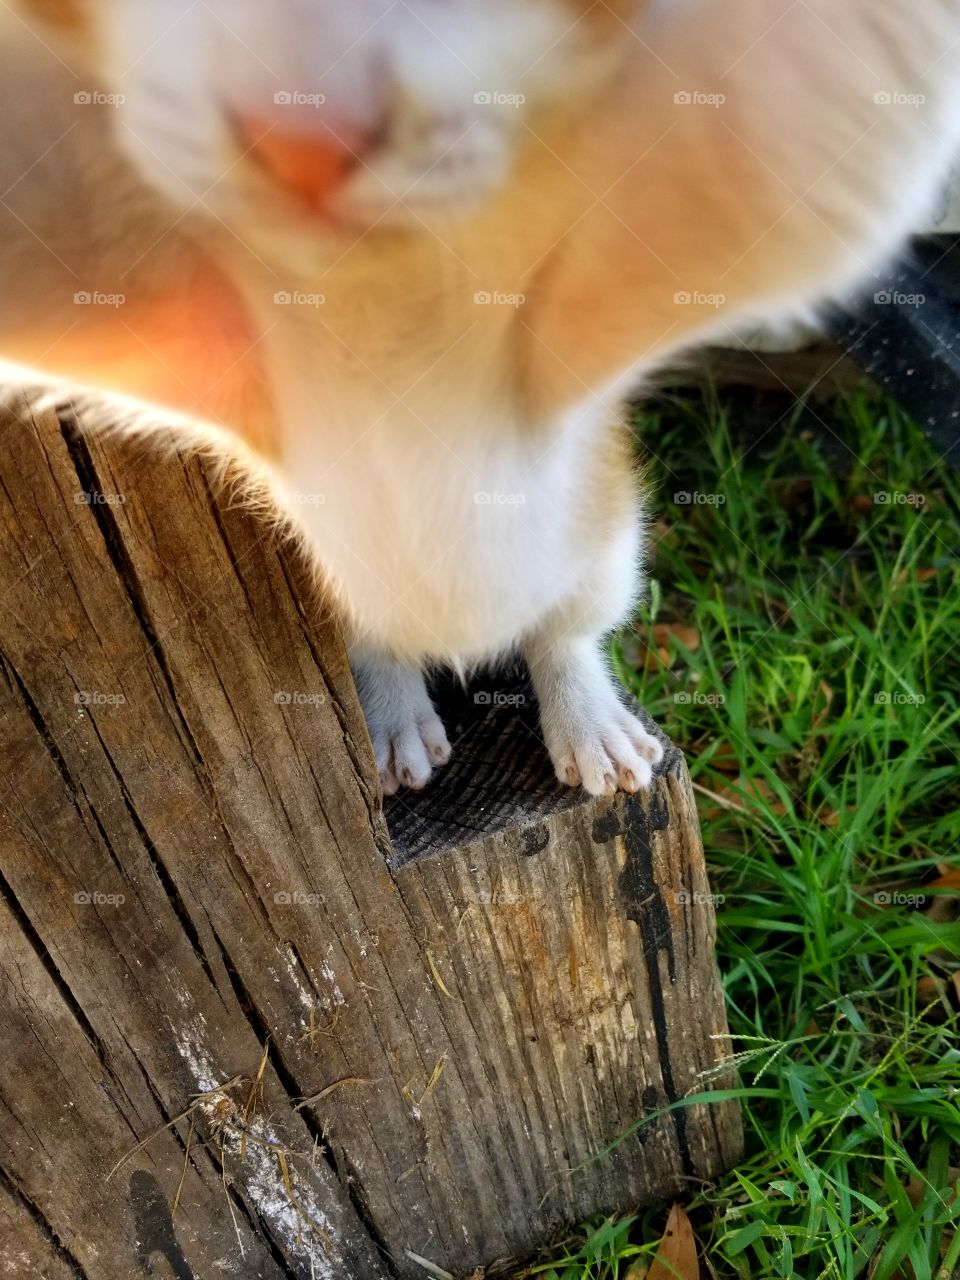 kitten selfie